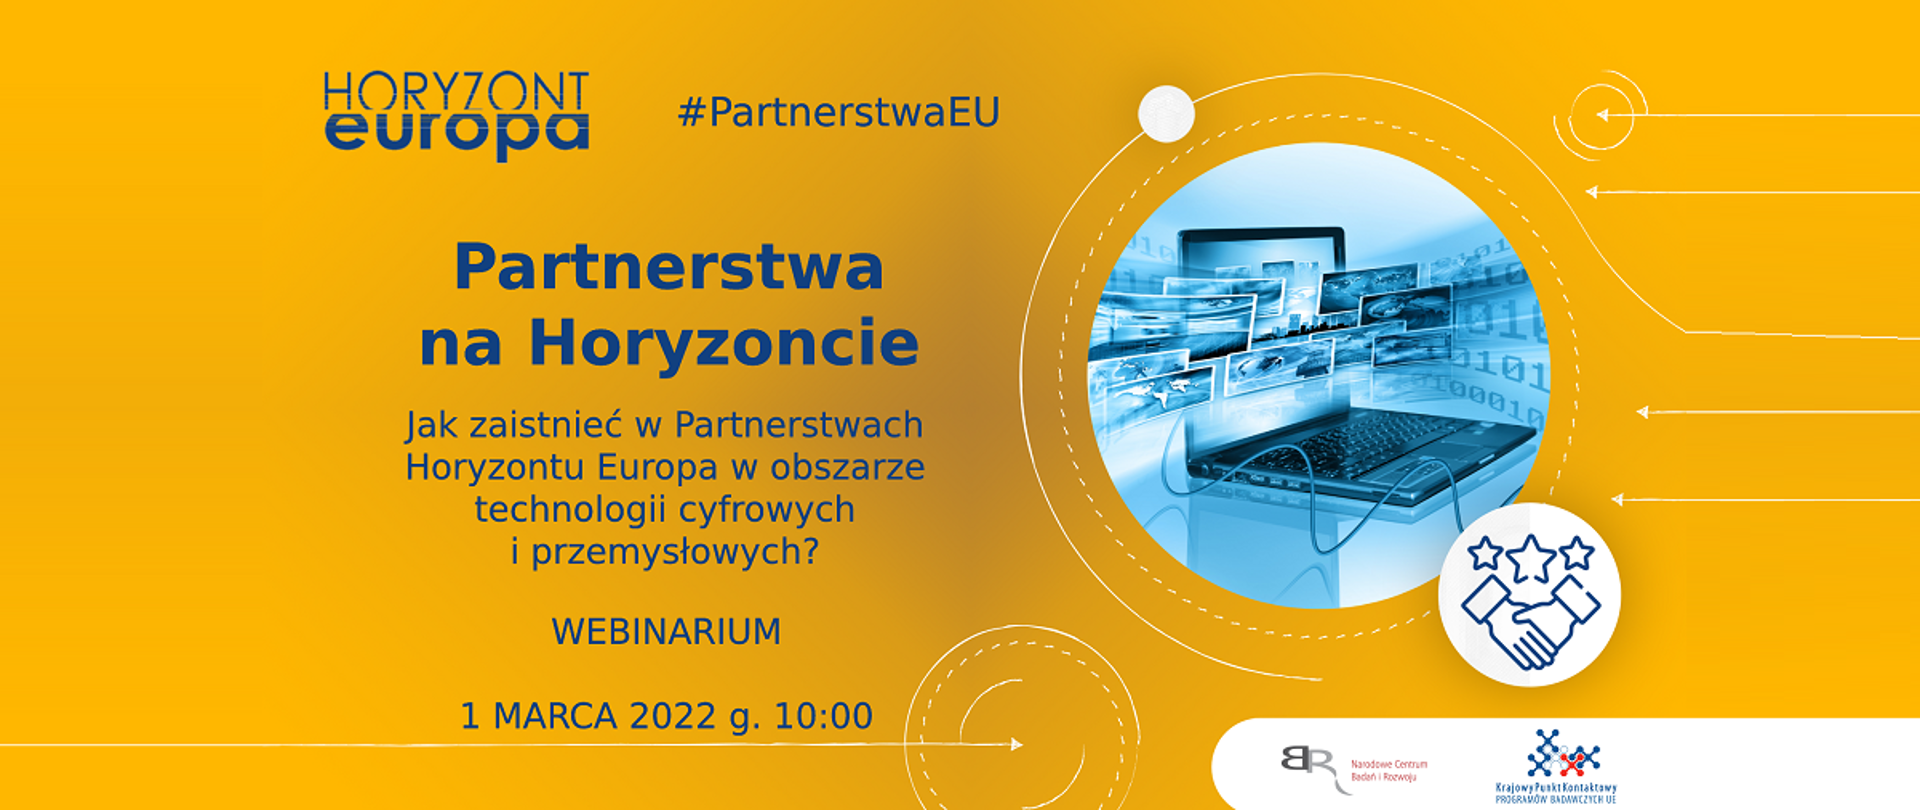 Horyzont Europa
Partnerstwa na Horyzoncie
Jak zaistnieć w Partnerstwach Horyzontu Europa w obszarze technologii cyfrowych i przemysłowych?
Webinarium
1 marca 2022 g. 10:00